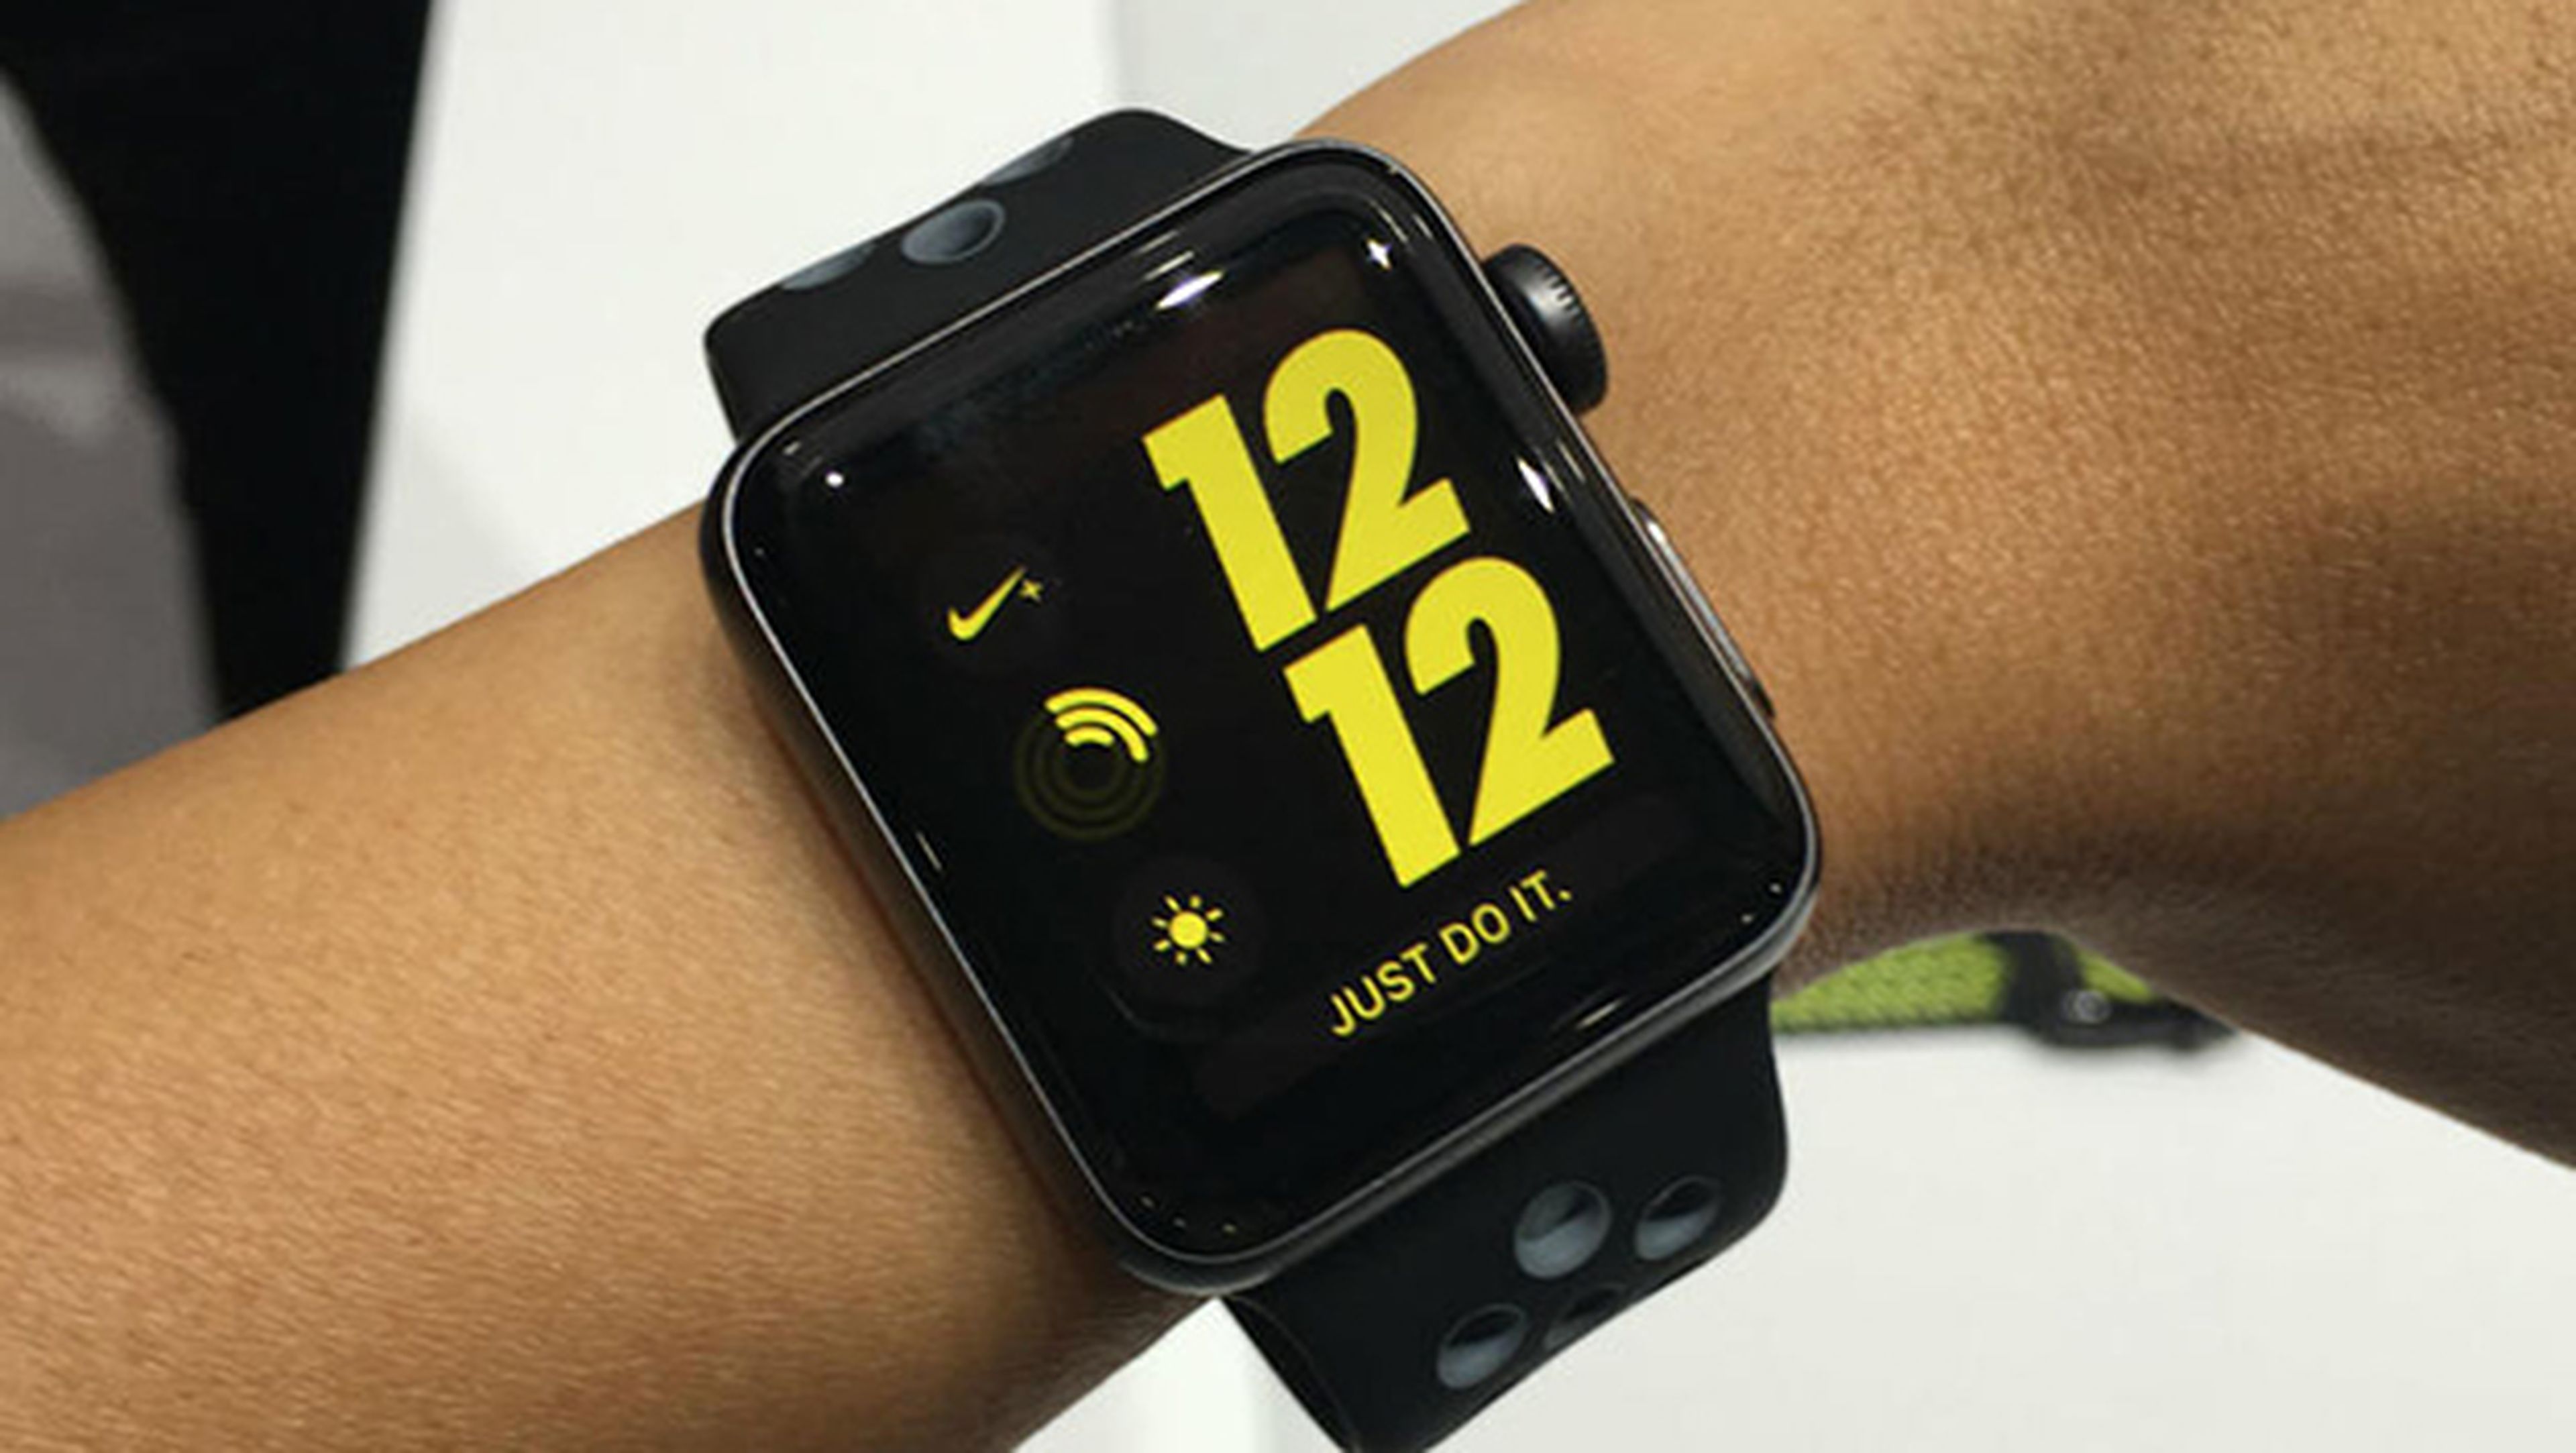 serie pedal simpatía El Apple Watch Series 2 Nike+, fechado para el 28 de octubre | Computer Hoy